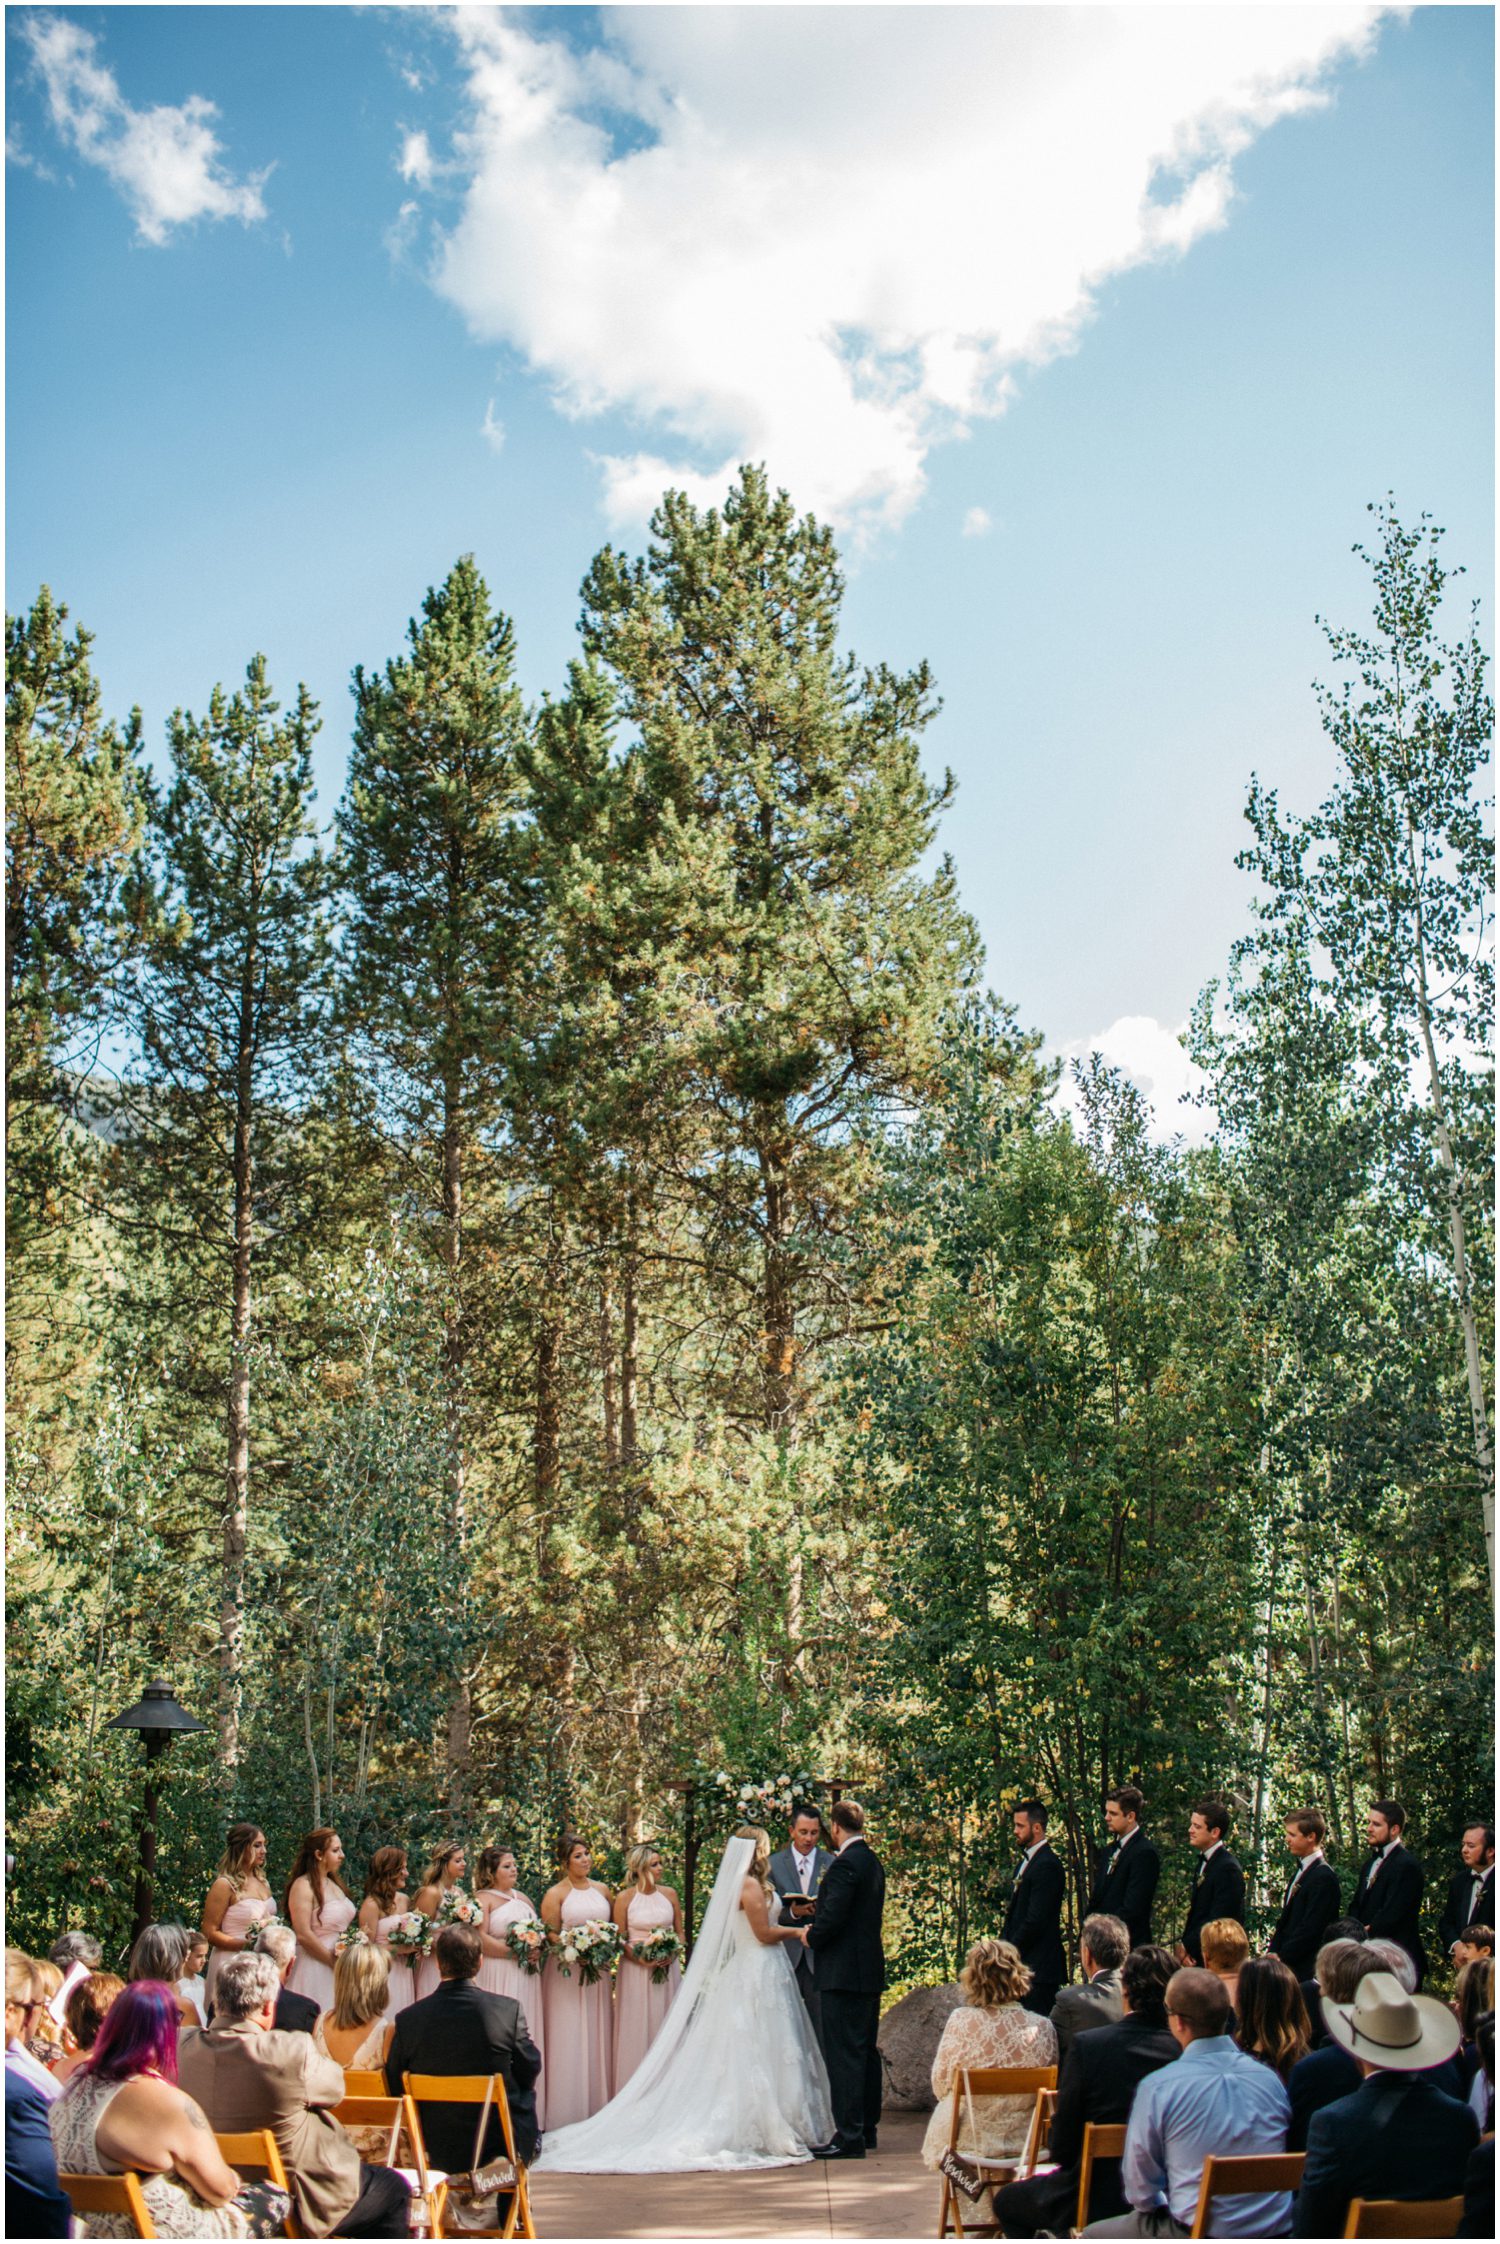 Donovan Pavillion Vail Colorado Wedding Photos, Vail Wedding Photographer, Colorado Wedding Photographer, Destination Wedding in Colorado, Mountain Wedding Venues, Colorado mountain wedding venues, Colorado wedding inspiration